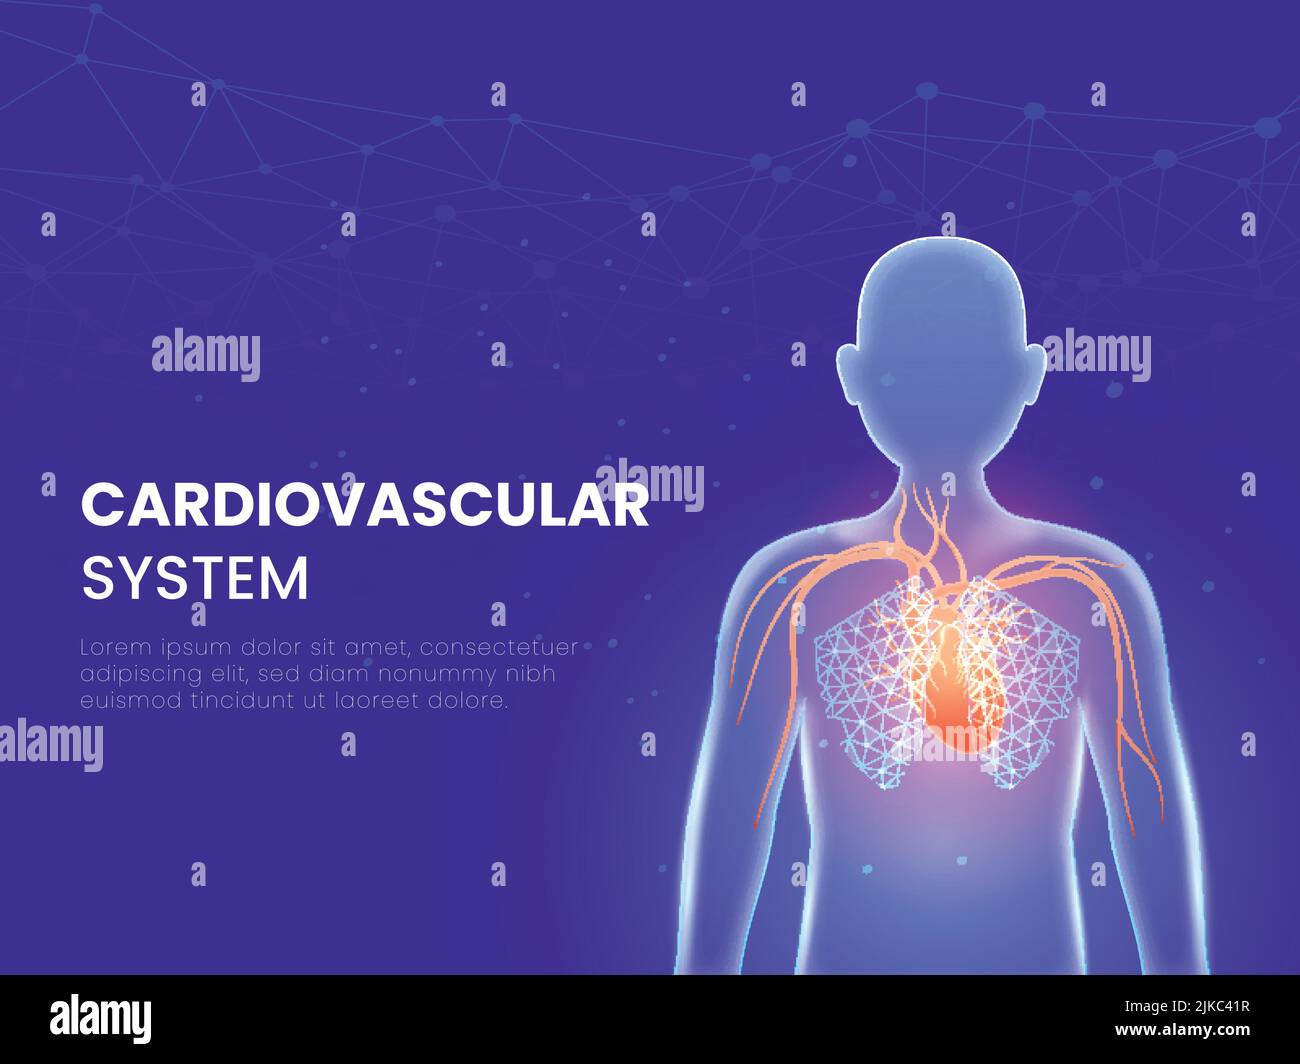 Kardiovaskuläres Oder Kreislaufsystem Konzept Mit Einem Teil Des Menschlichen Organischen Auf Blauen Polygonlinien Hintergrund. Stock Vektor